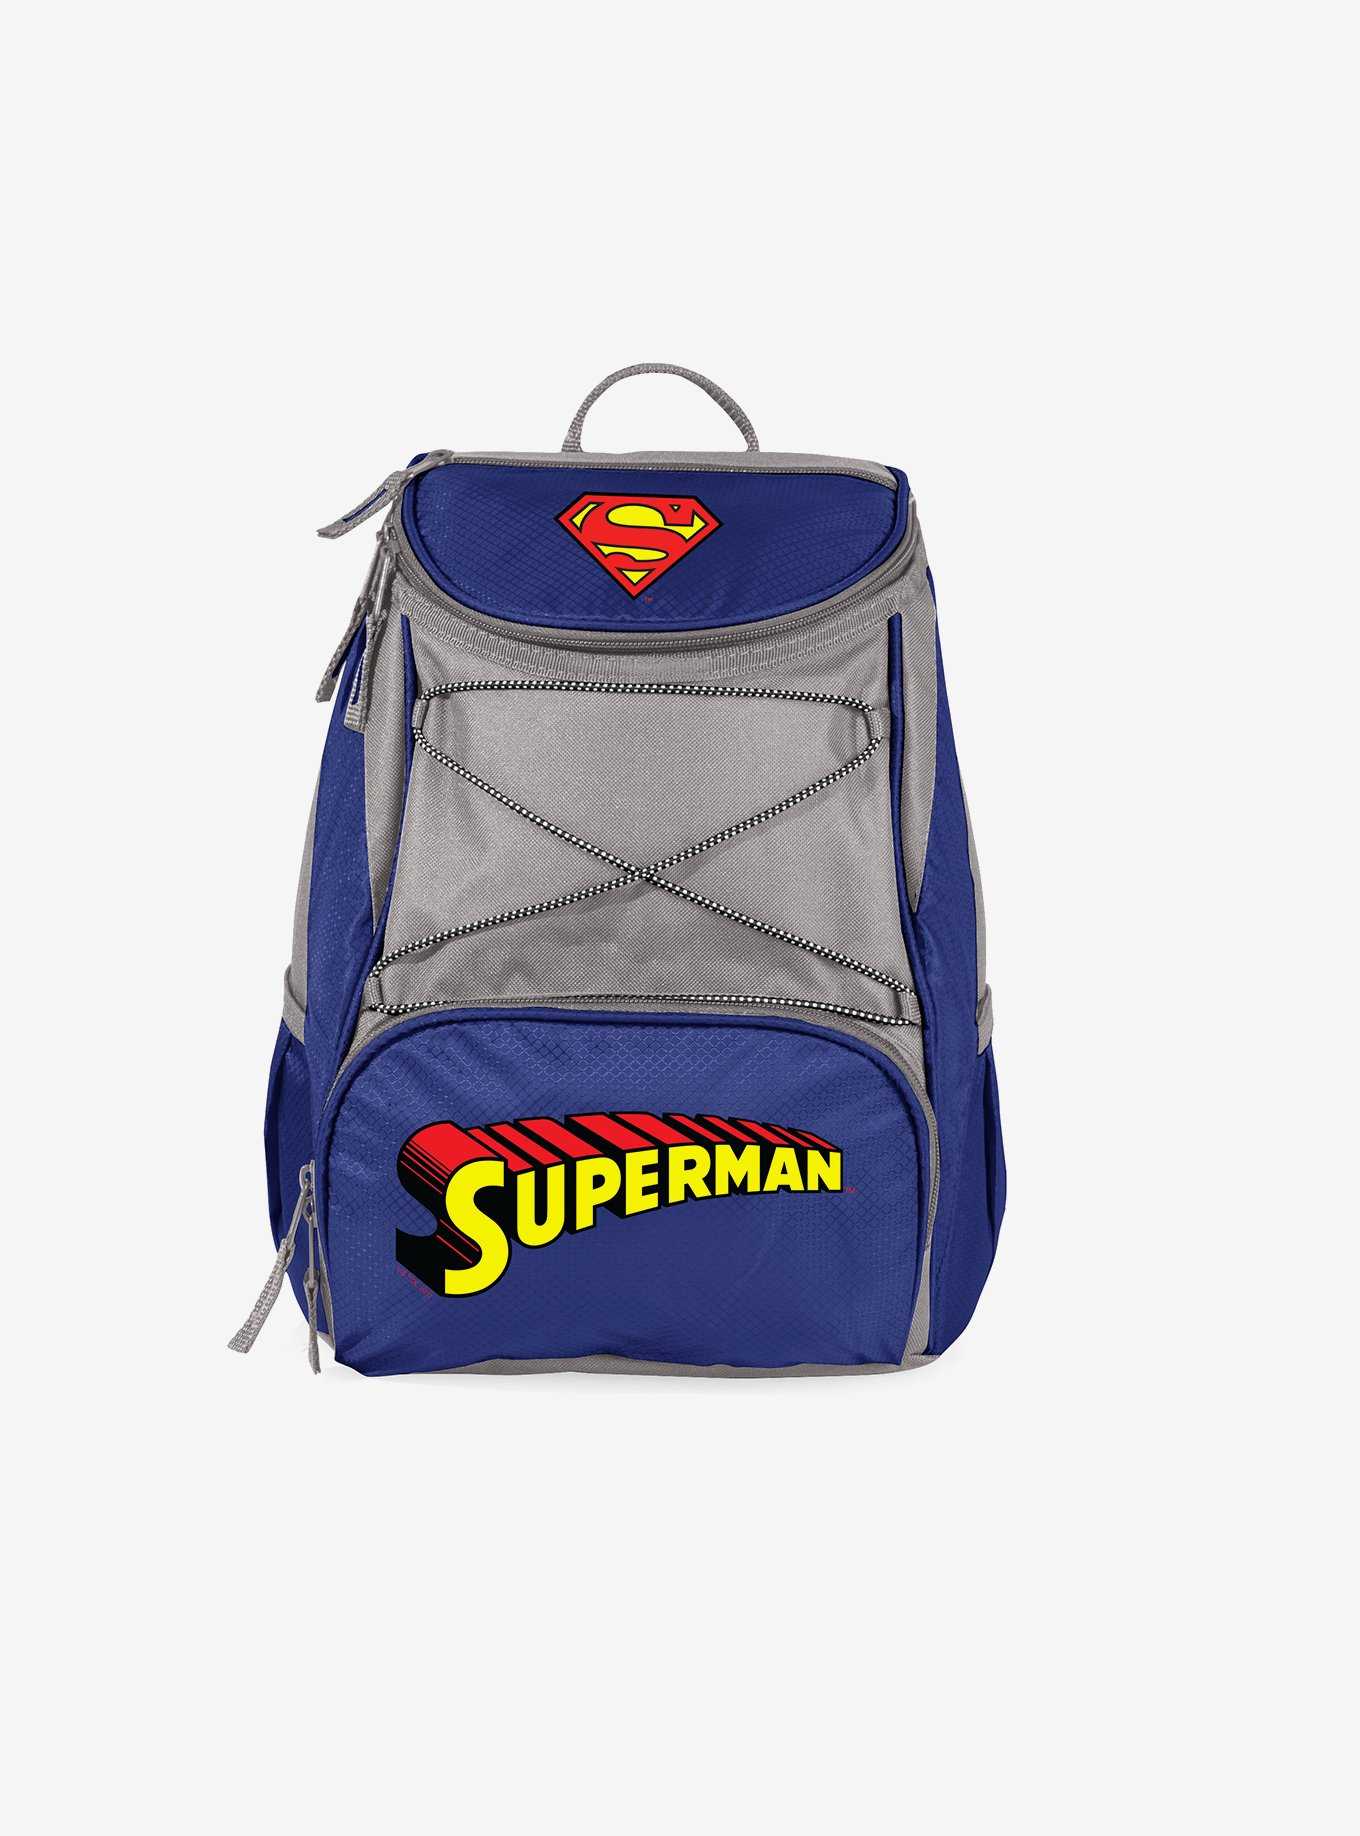 DC Comics Superman PTX Backpack Cooler, , hi-res